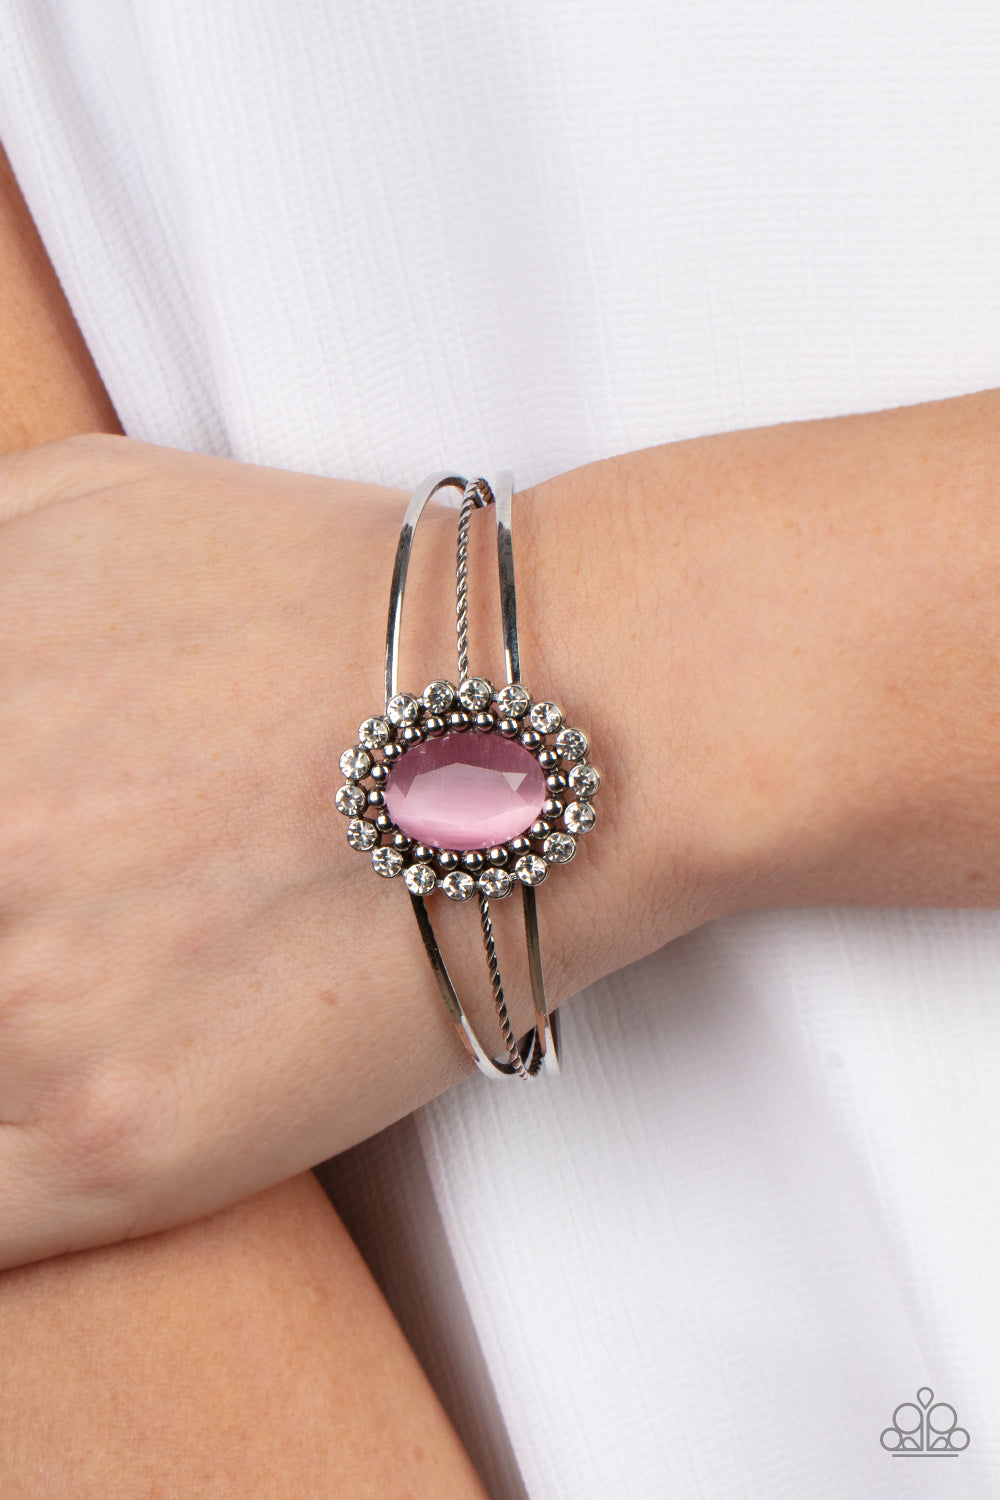 Prismatic Flower Patch - Pink Bracelet - Paparazzi Accessories – Bedazzle  Me Pretty Mobile Fashion Boutique